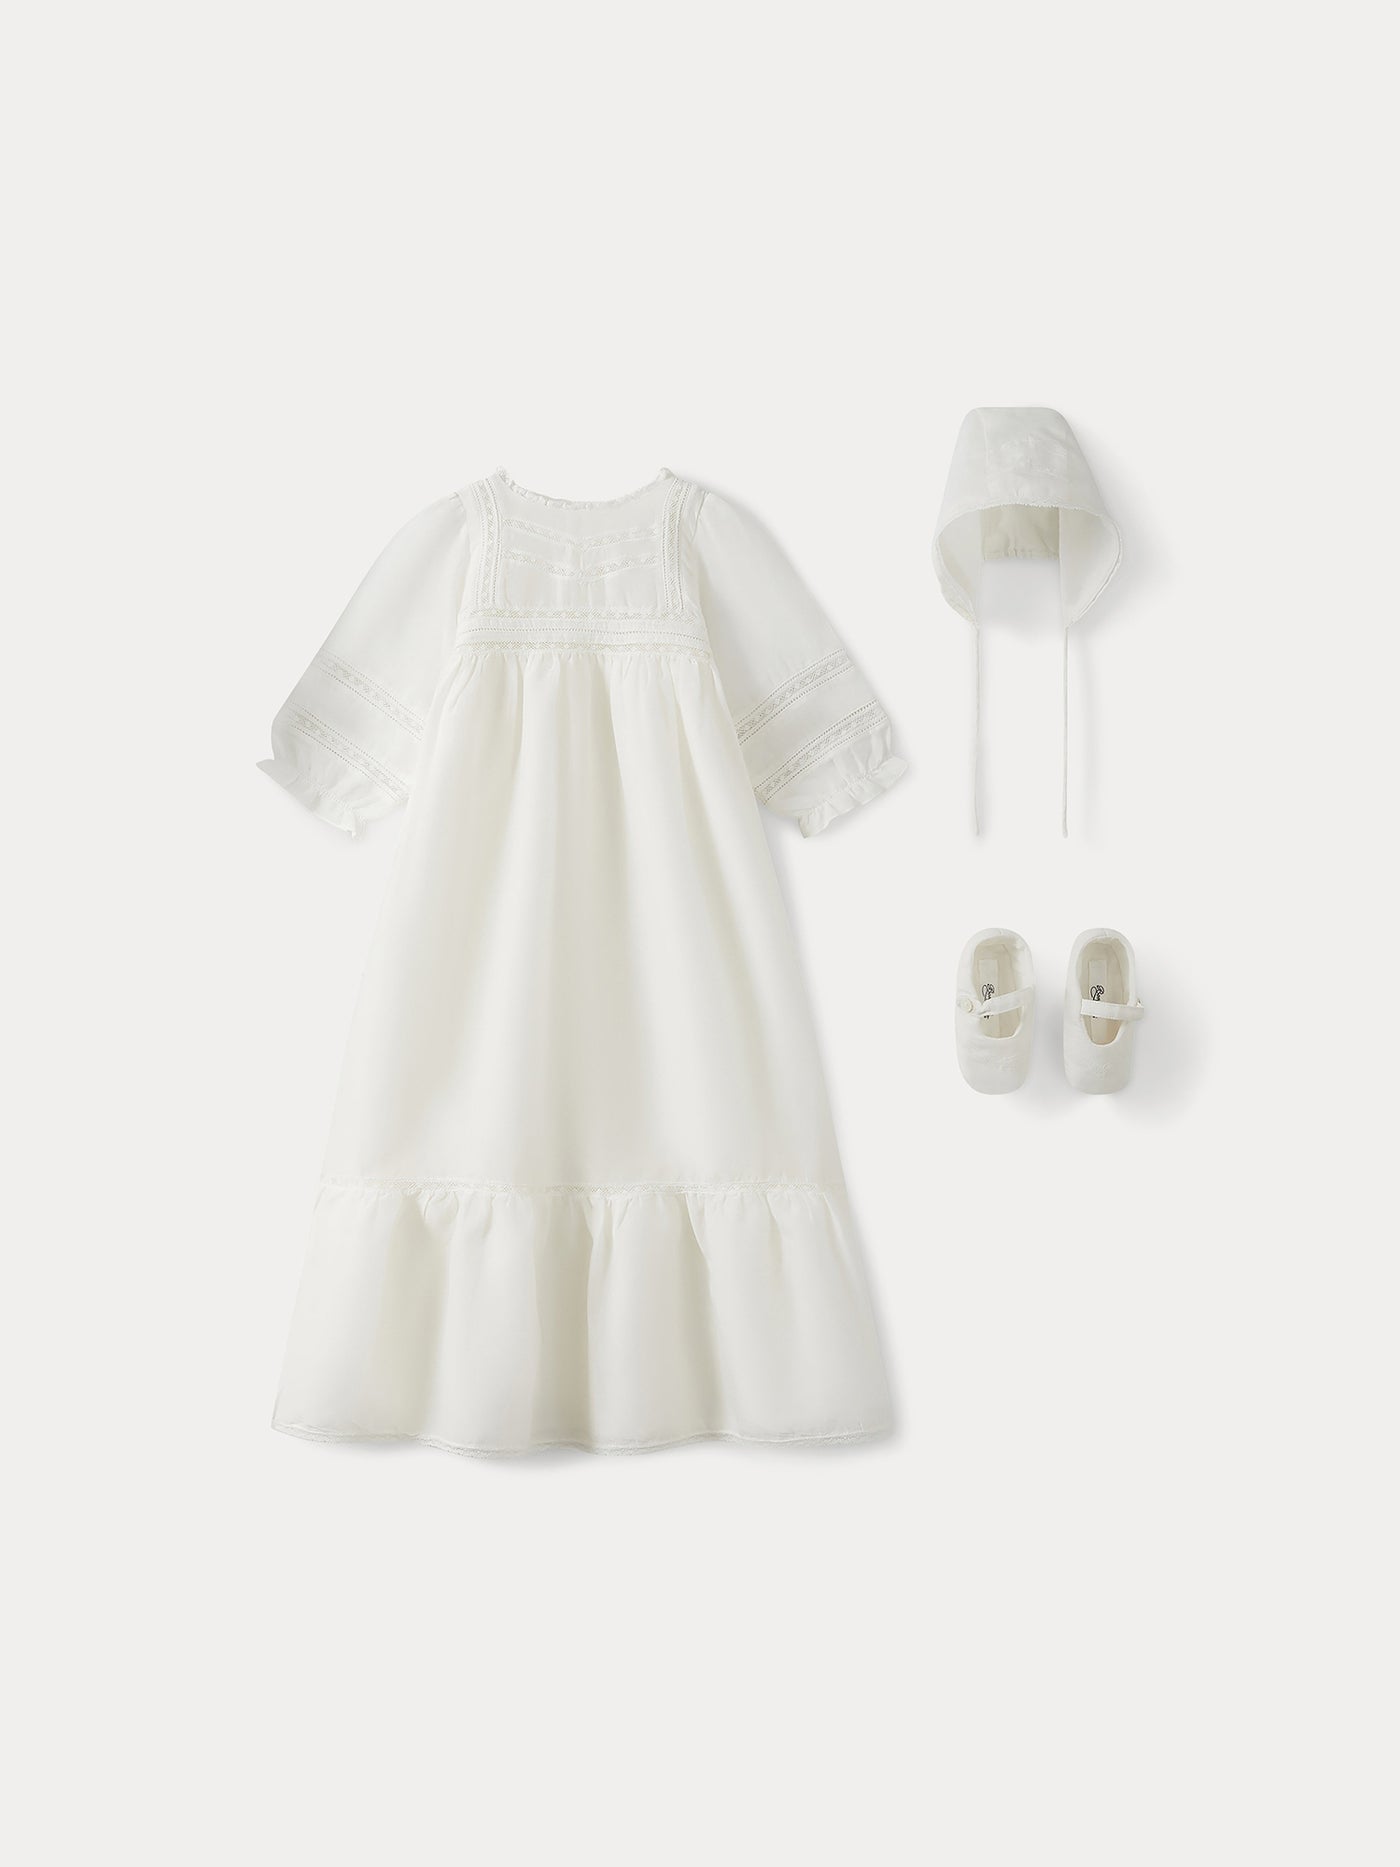 Silk Christening Dress for Baby milk white